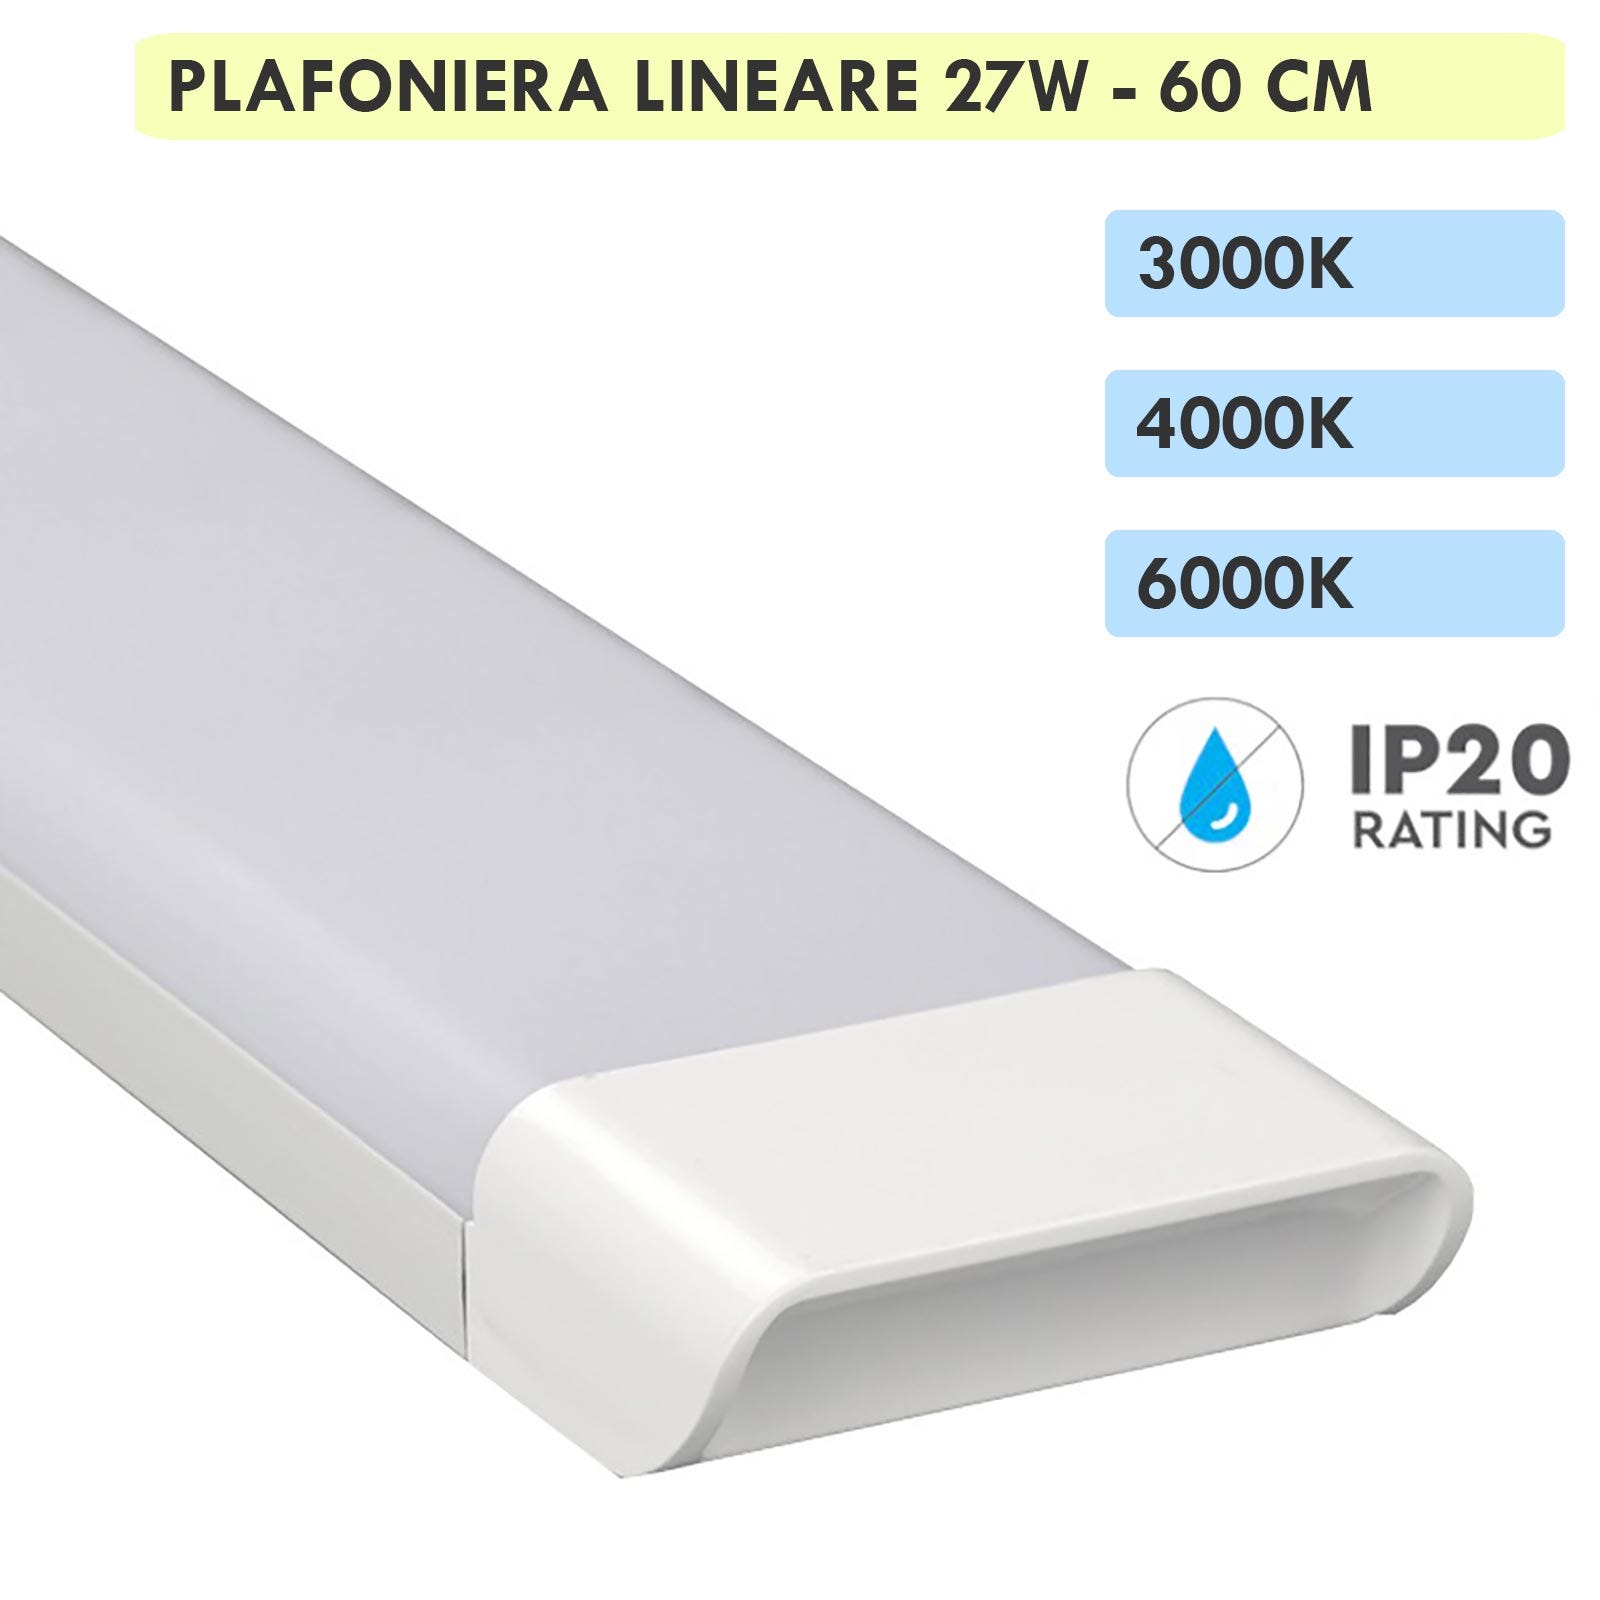 Plafoniera lineare LED 27W lampada soffitto parete 2700lm luce interni  cucina ripostiglio cantina 60cm 230V 4000K